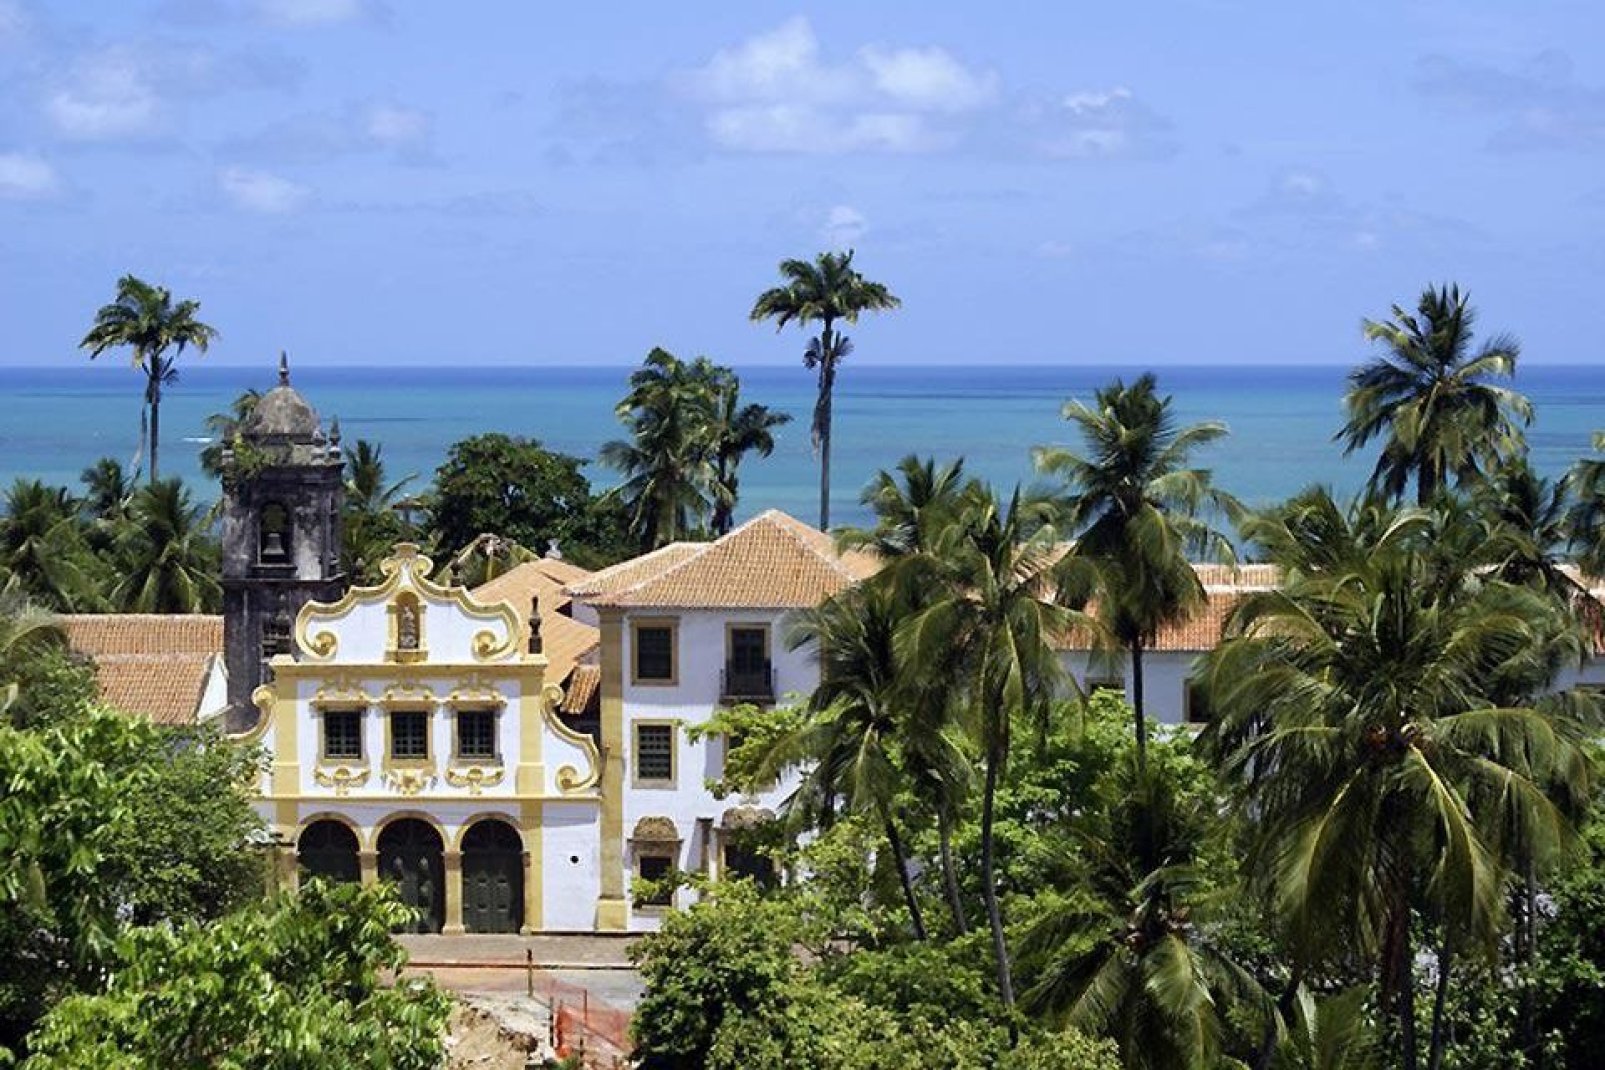 Esta ciudad colonial portuguesa forma parte de las ciudades más antiguas de Brasil.